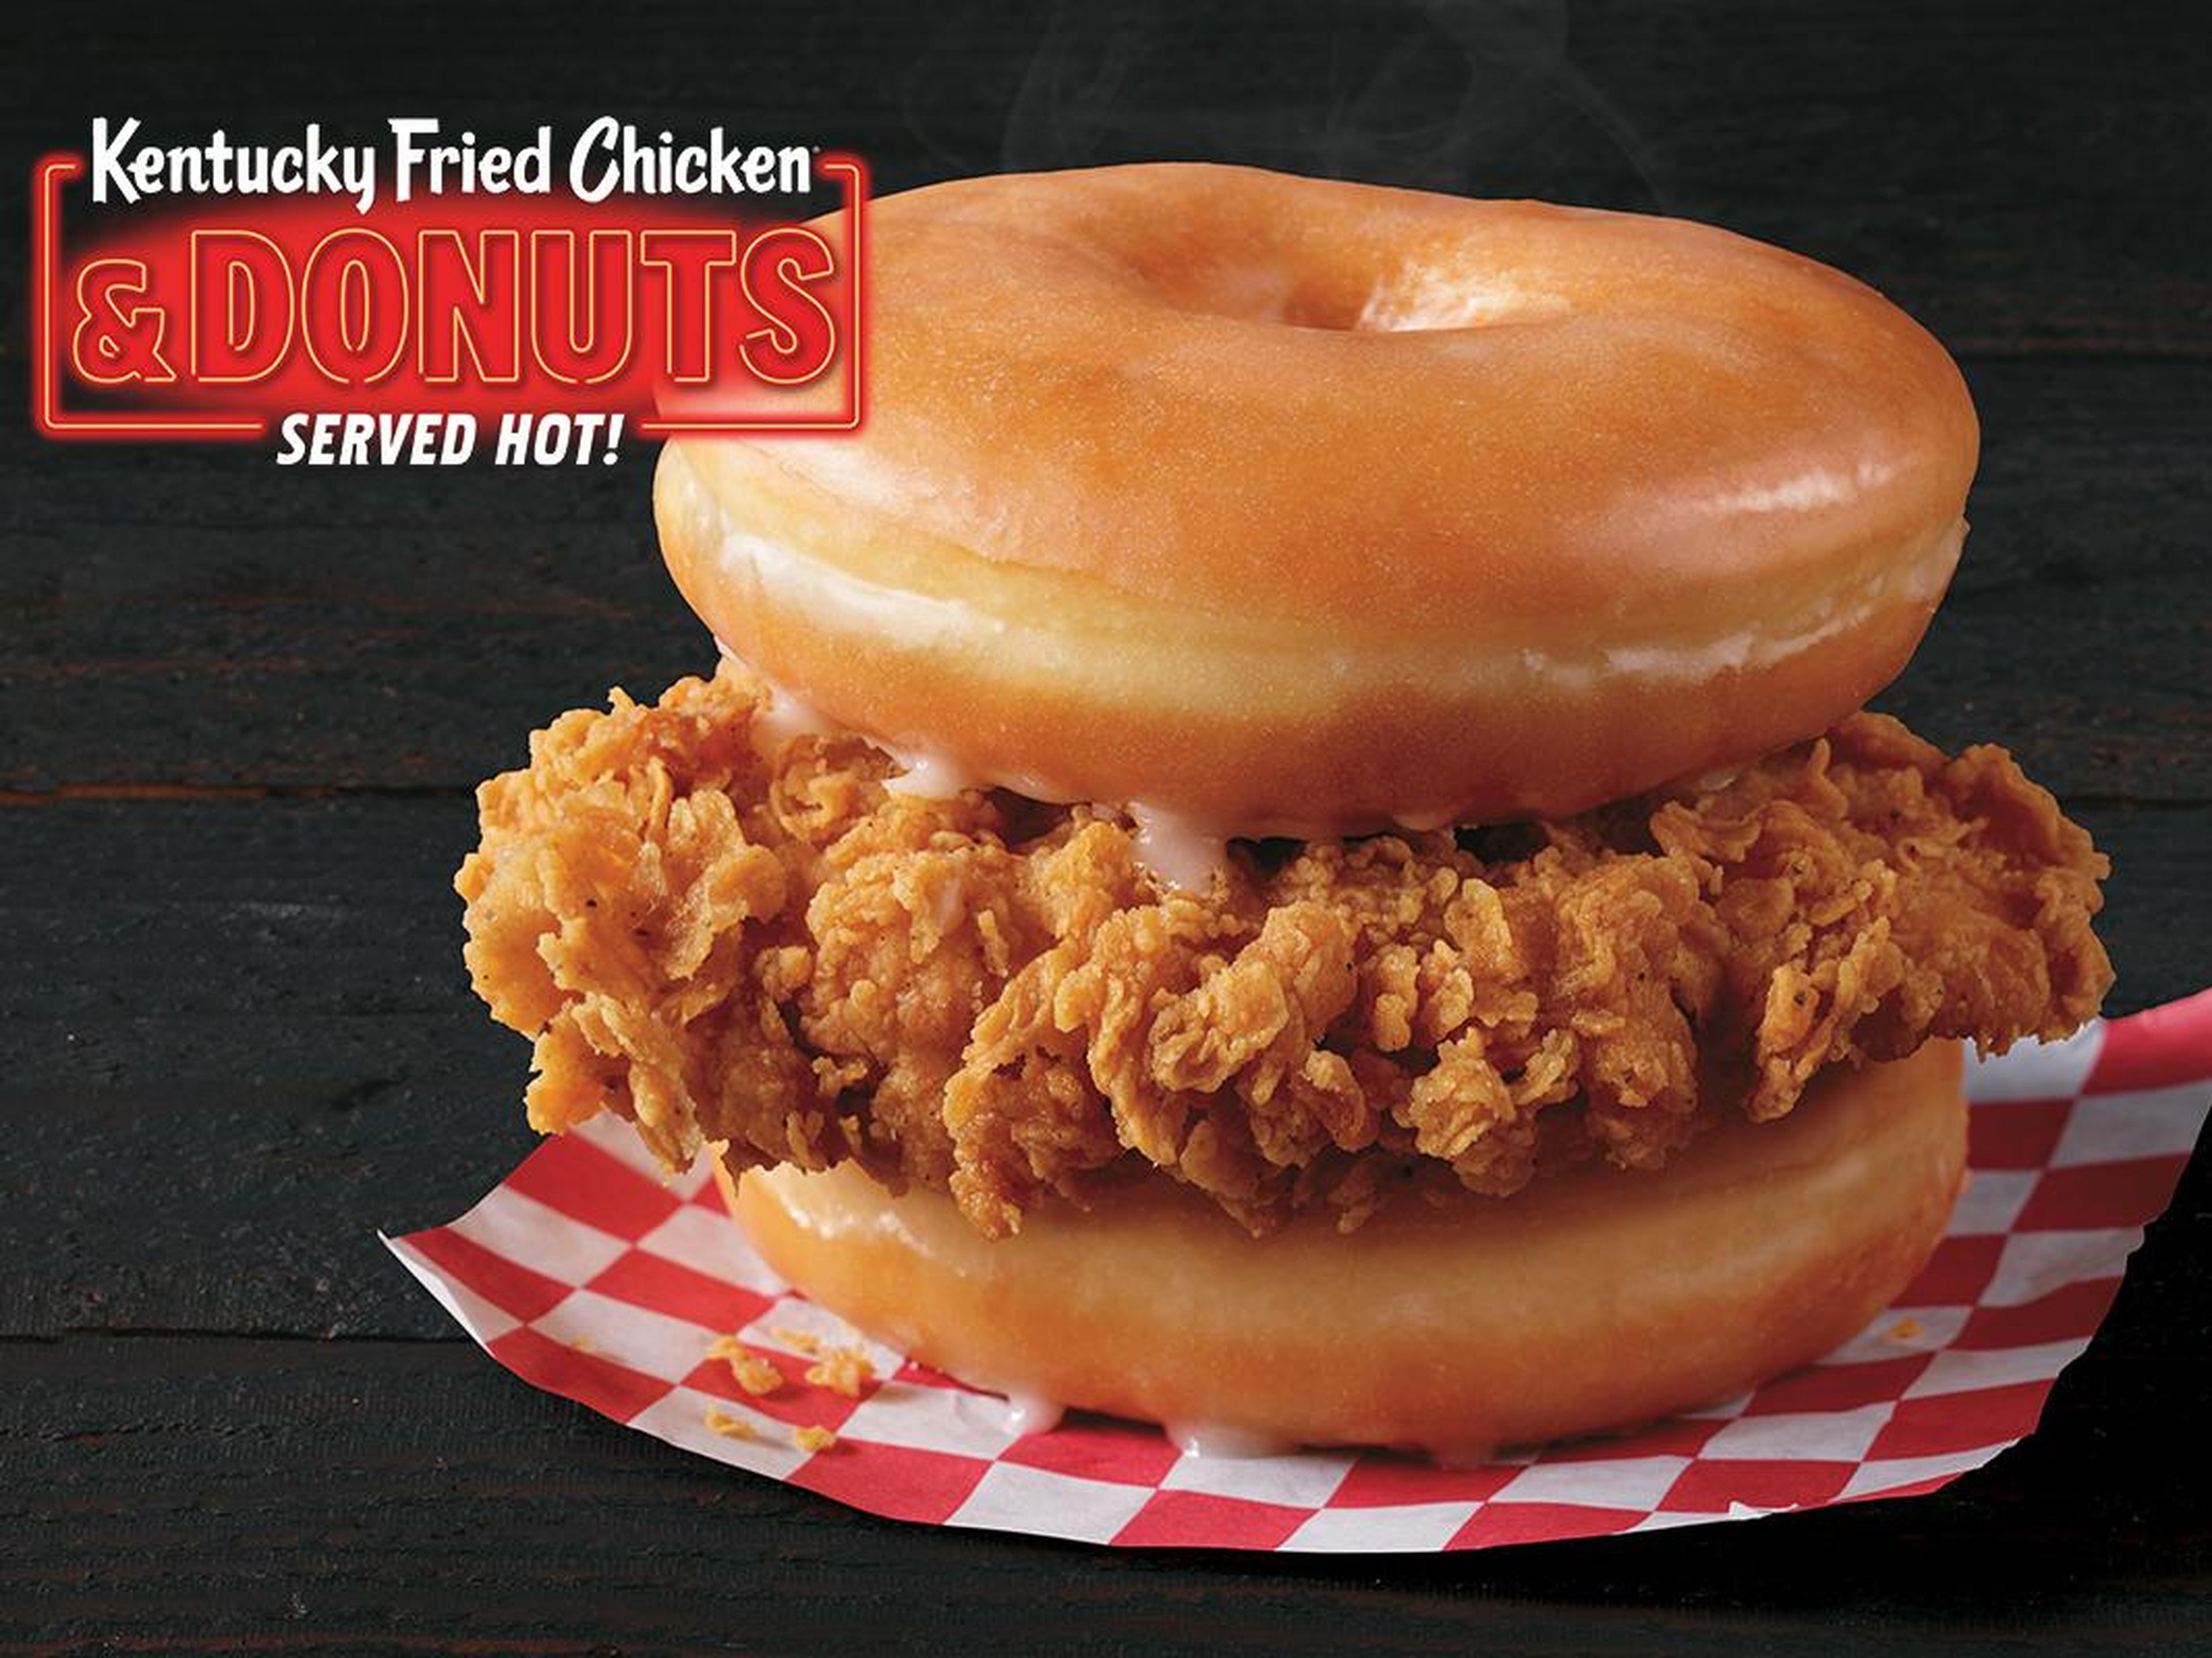 El sandwich "Kentucky Fried Chicken and Donuts" de KFC.